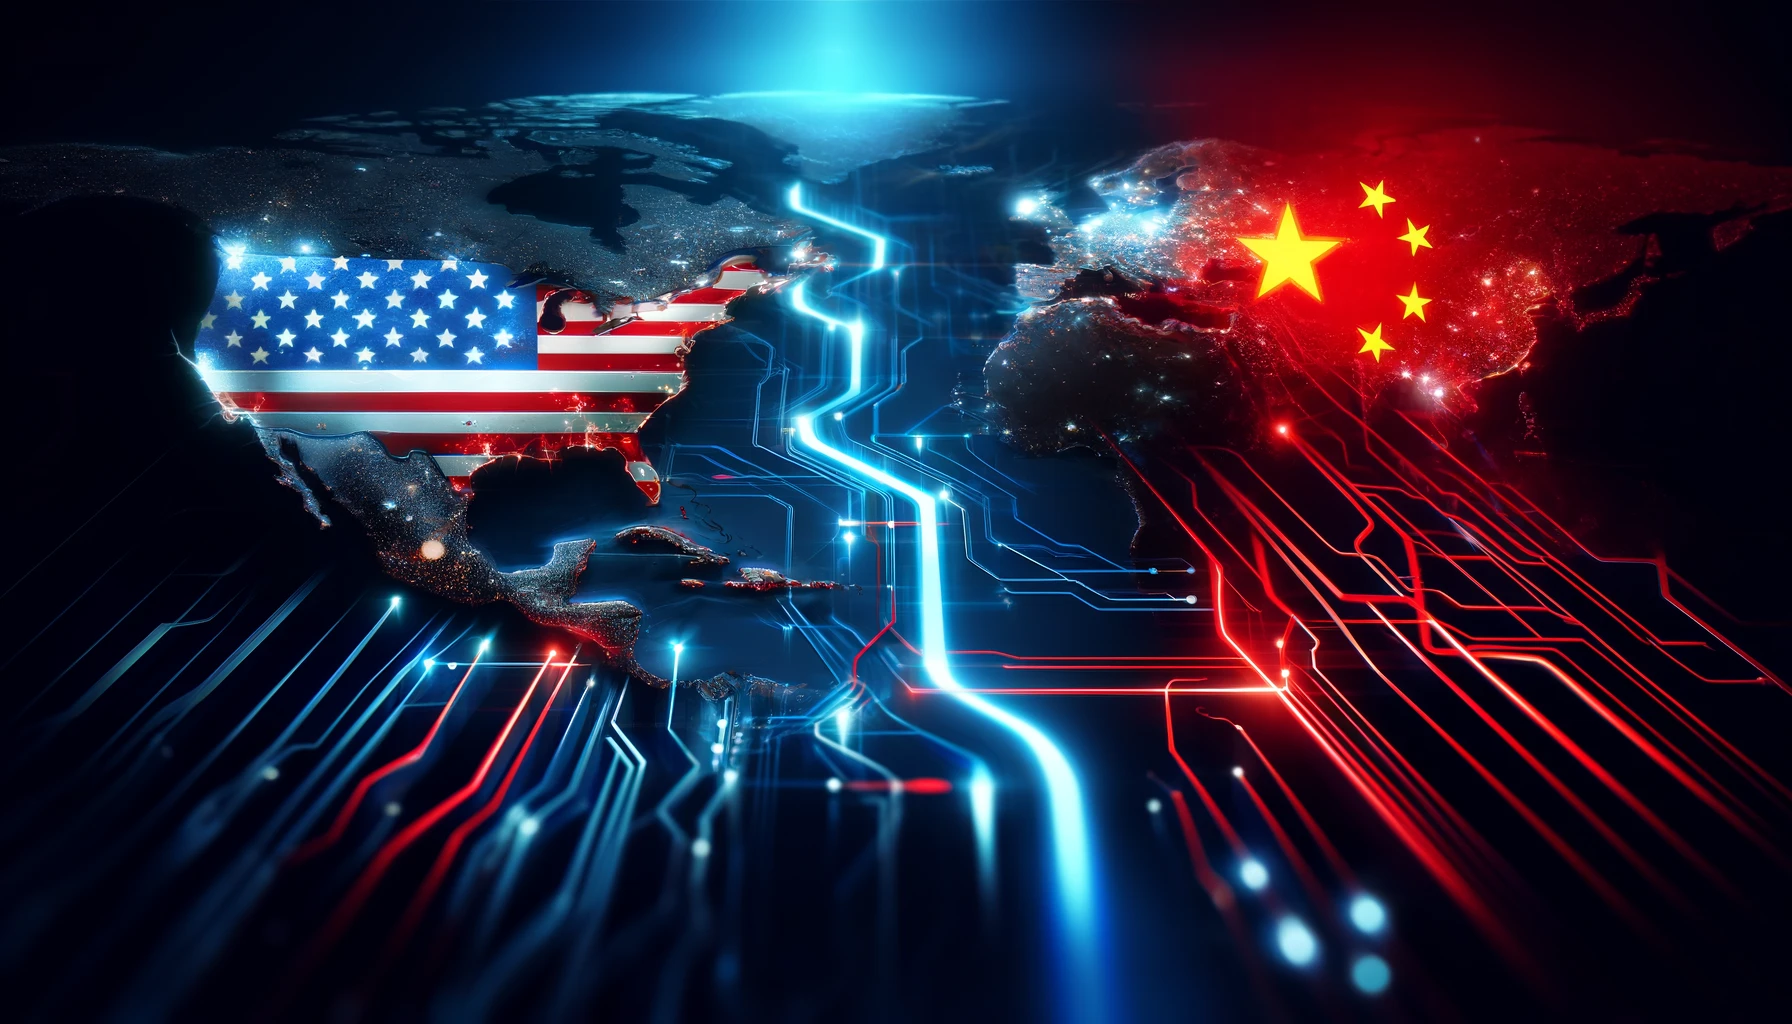 Digitale Darstellung des geopolitischen Konflikts zwischen den USA und China über Halbleiterexporte, mit hervorgehobenen Ländern und digitalen Verbindungen.